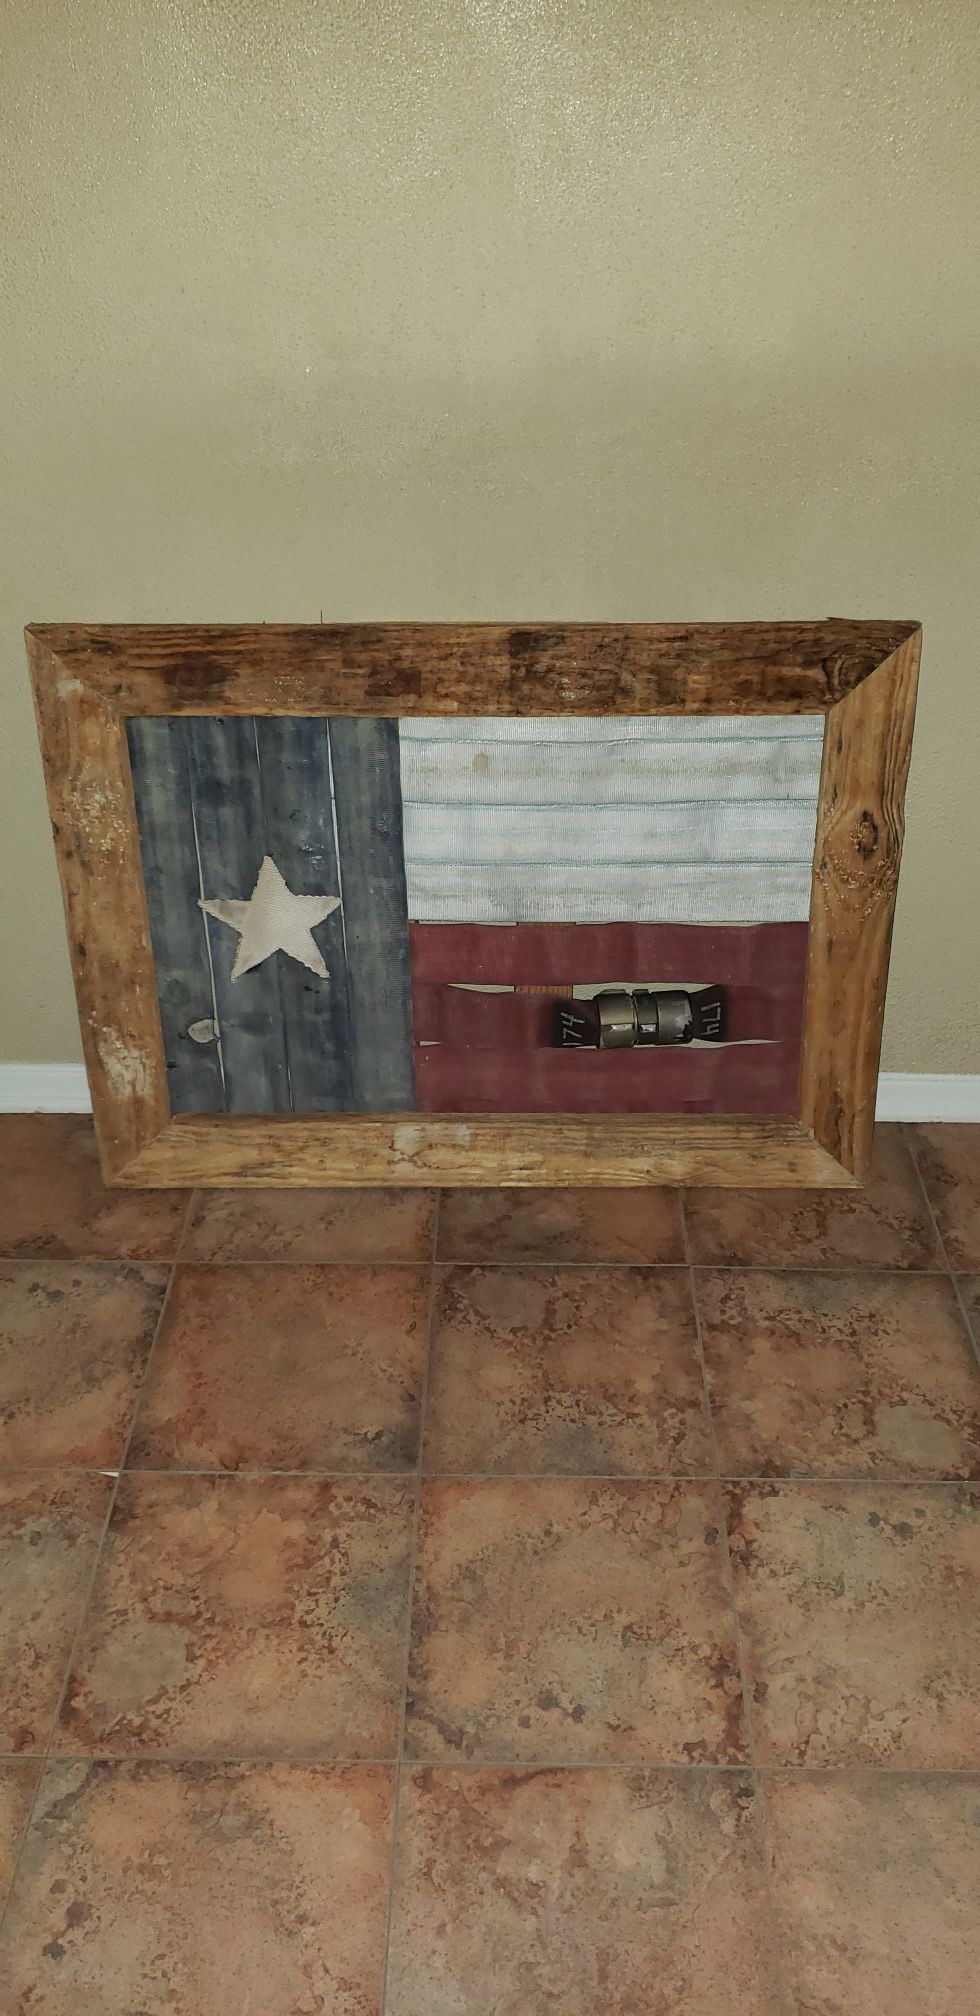 Fire Hose Texas Flag